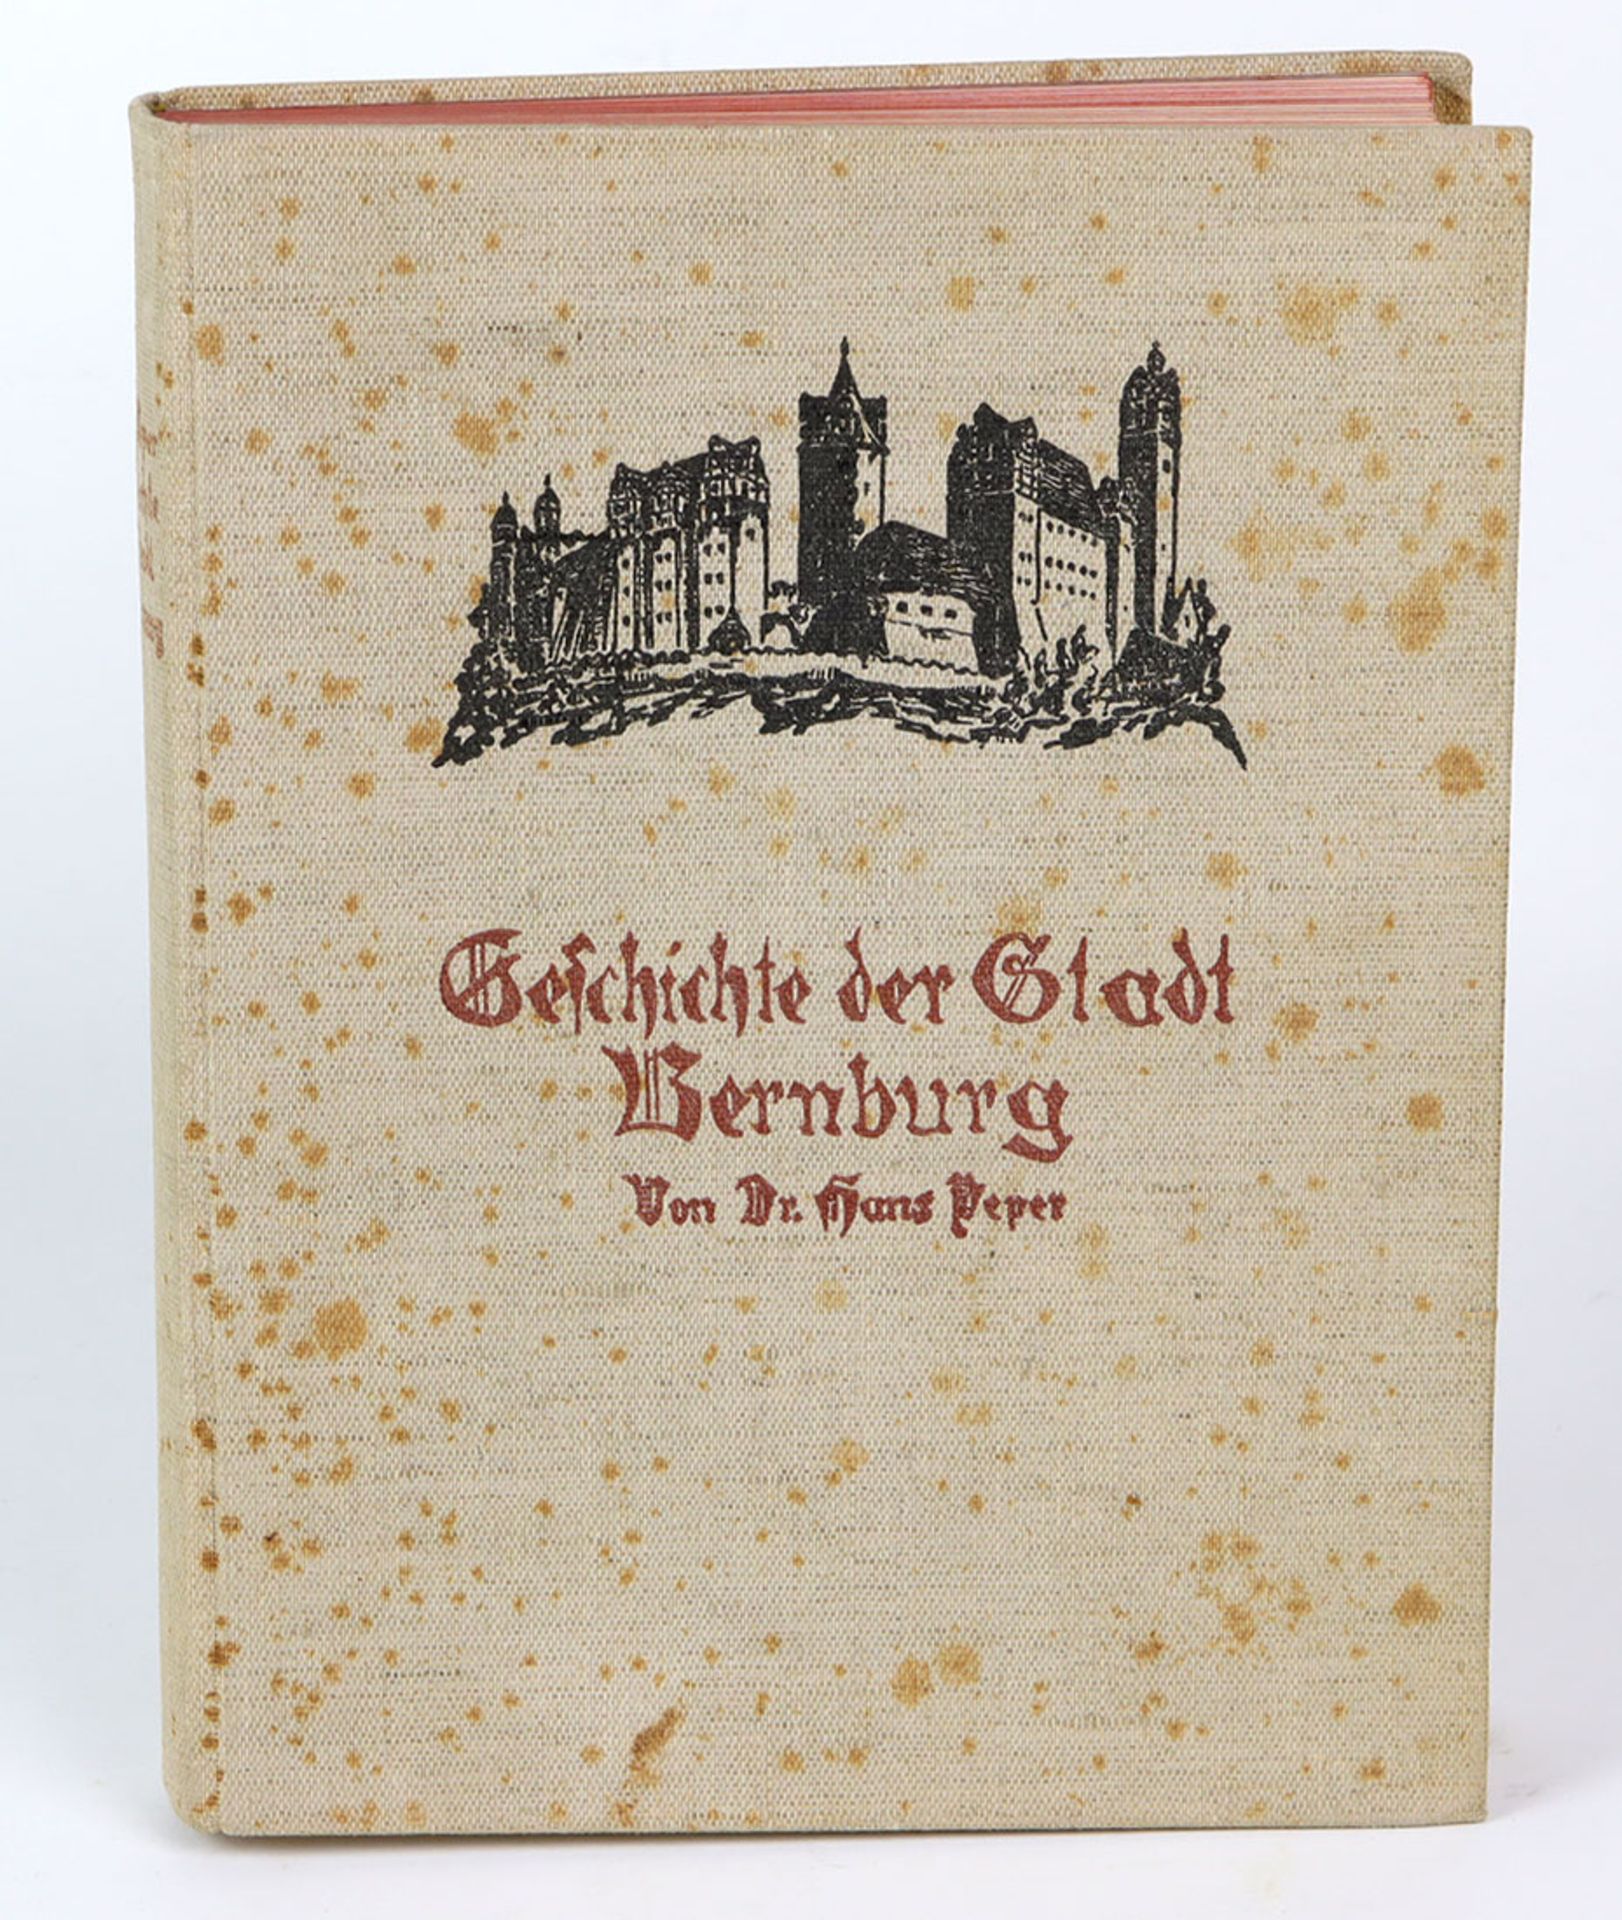 Geschichte der Stadt Bernburgvon Dr. Hans Peper, mit einem Vorwort, farbigem Frontispiz, 192 Abb. im